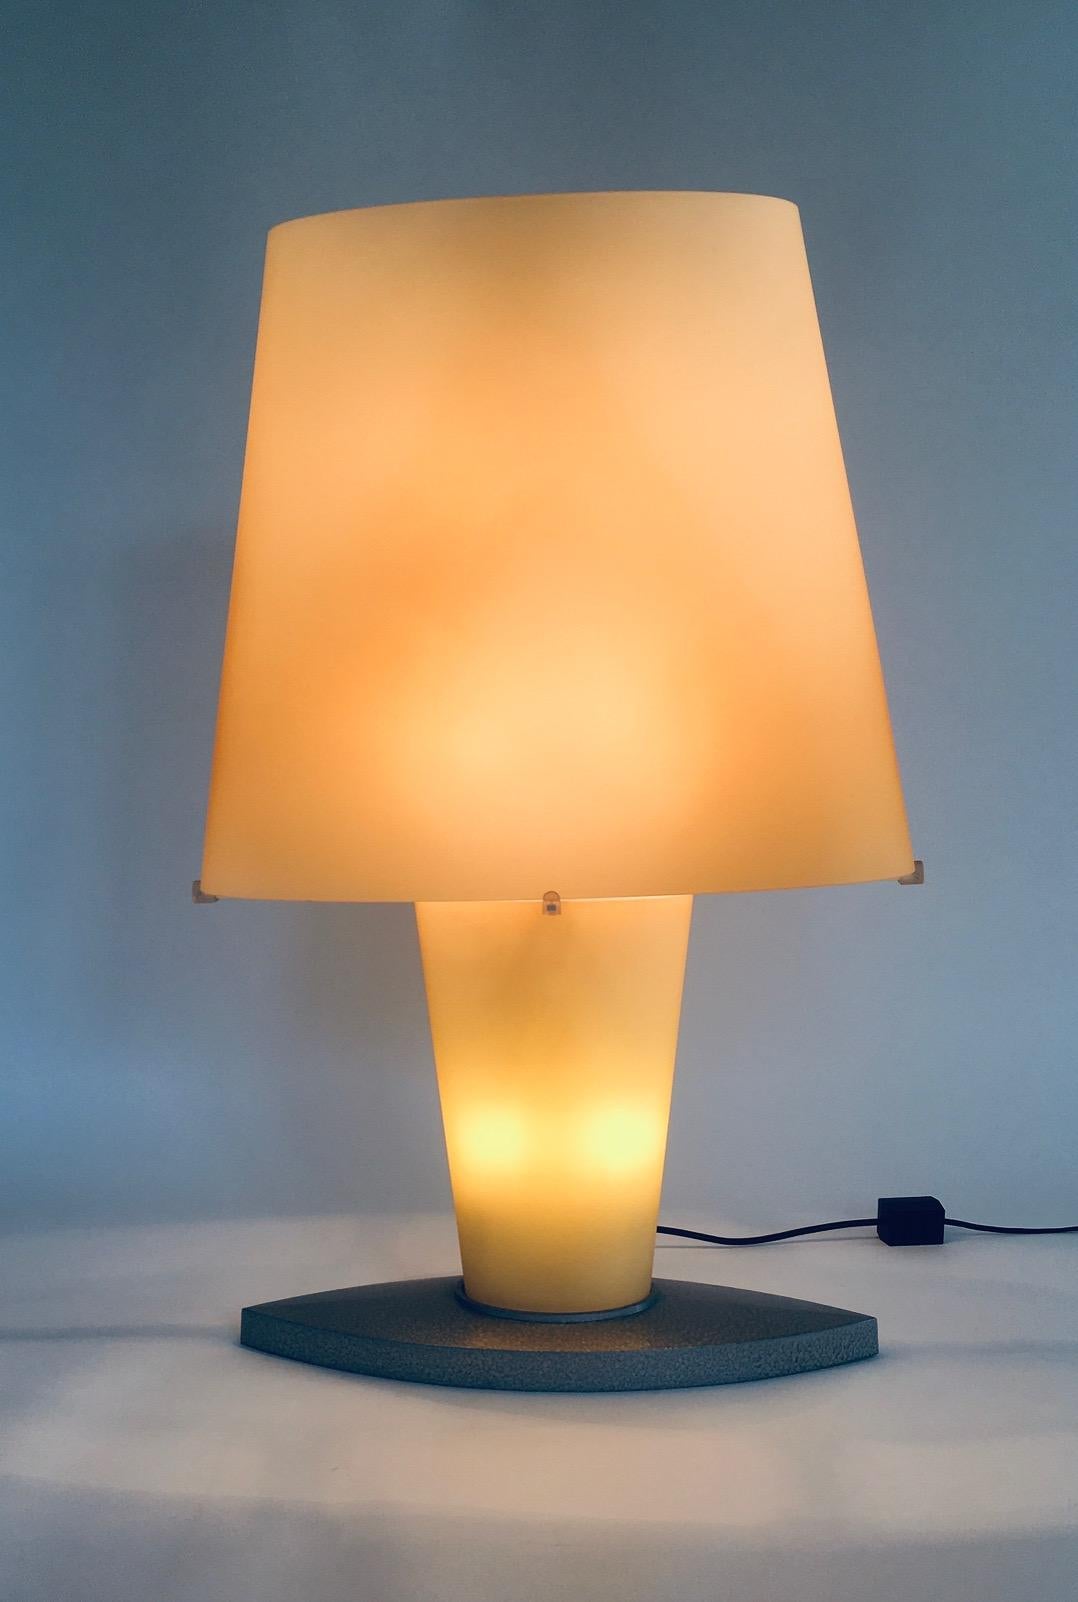 Postmodernes Design XL Glastischlampe von Daniela Puppa für Fontana Arte. Hergestellt in Italien, 1980er/90er Jahre. Modell 2892. Dies ist das Modell XL der Tischleuchte. Frostglas in gelber Farbe mit Metallsockel. Die Lampe kann in 2 Fasen